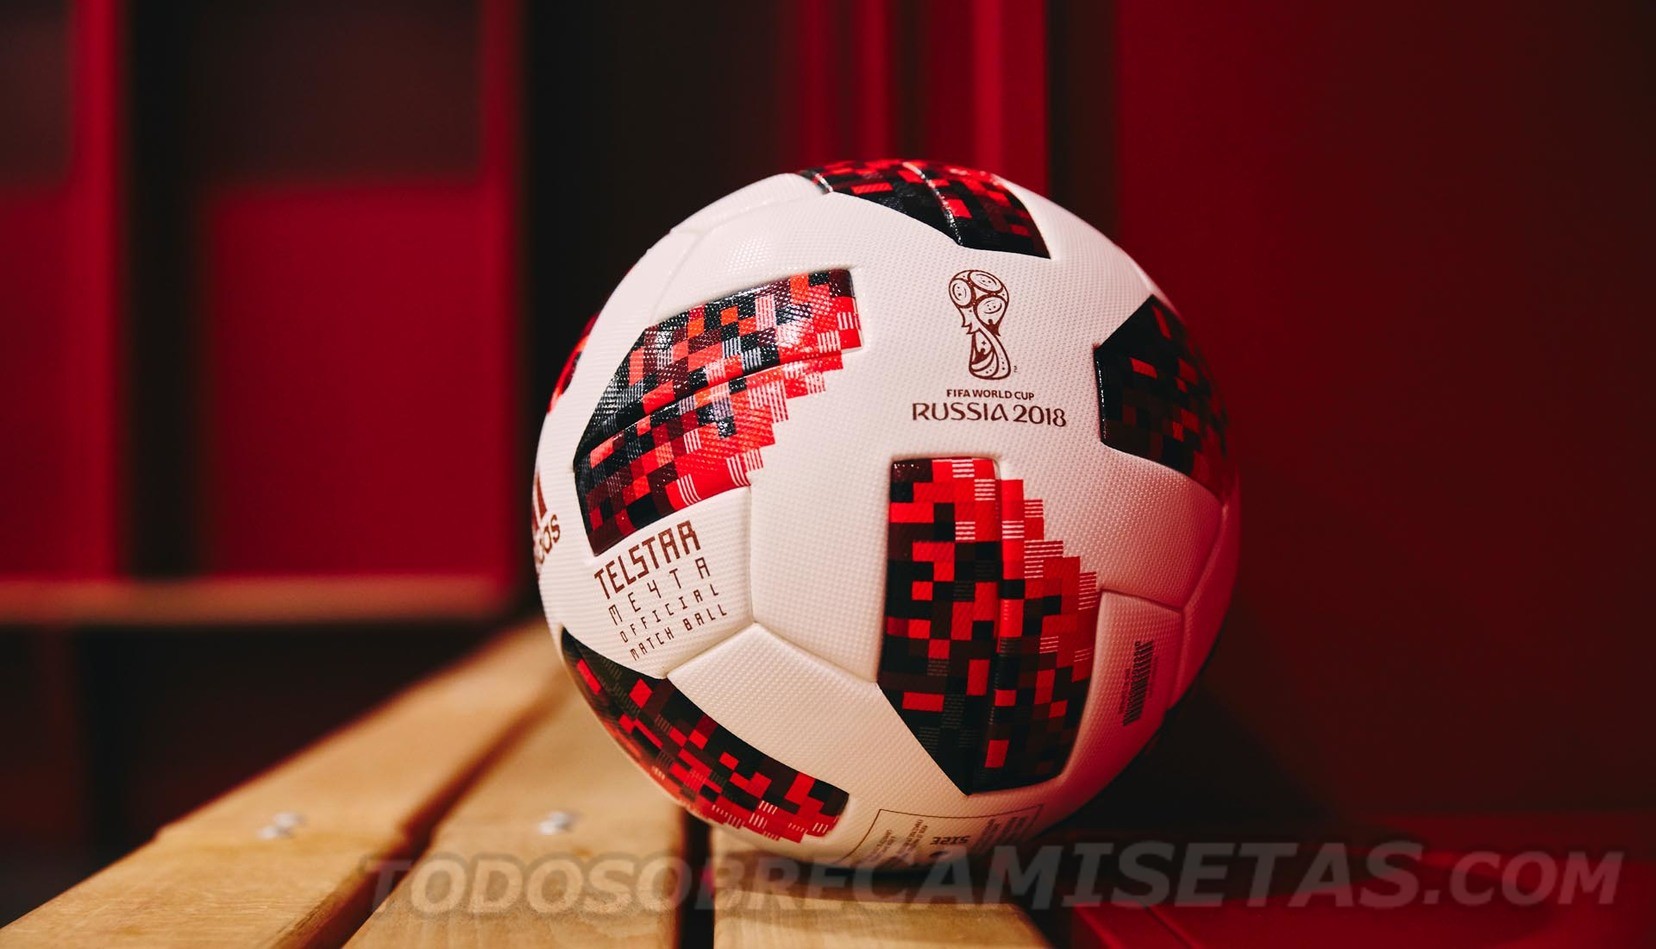 adidas Telstar 'Mechta' 18 World Cup Ball